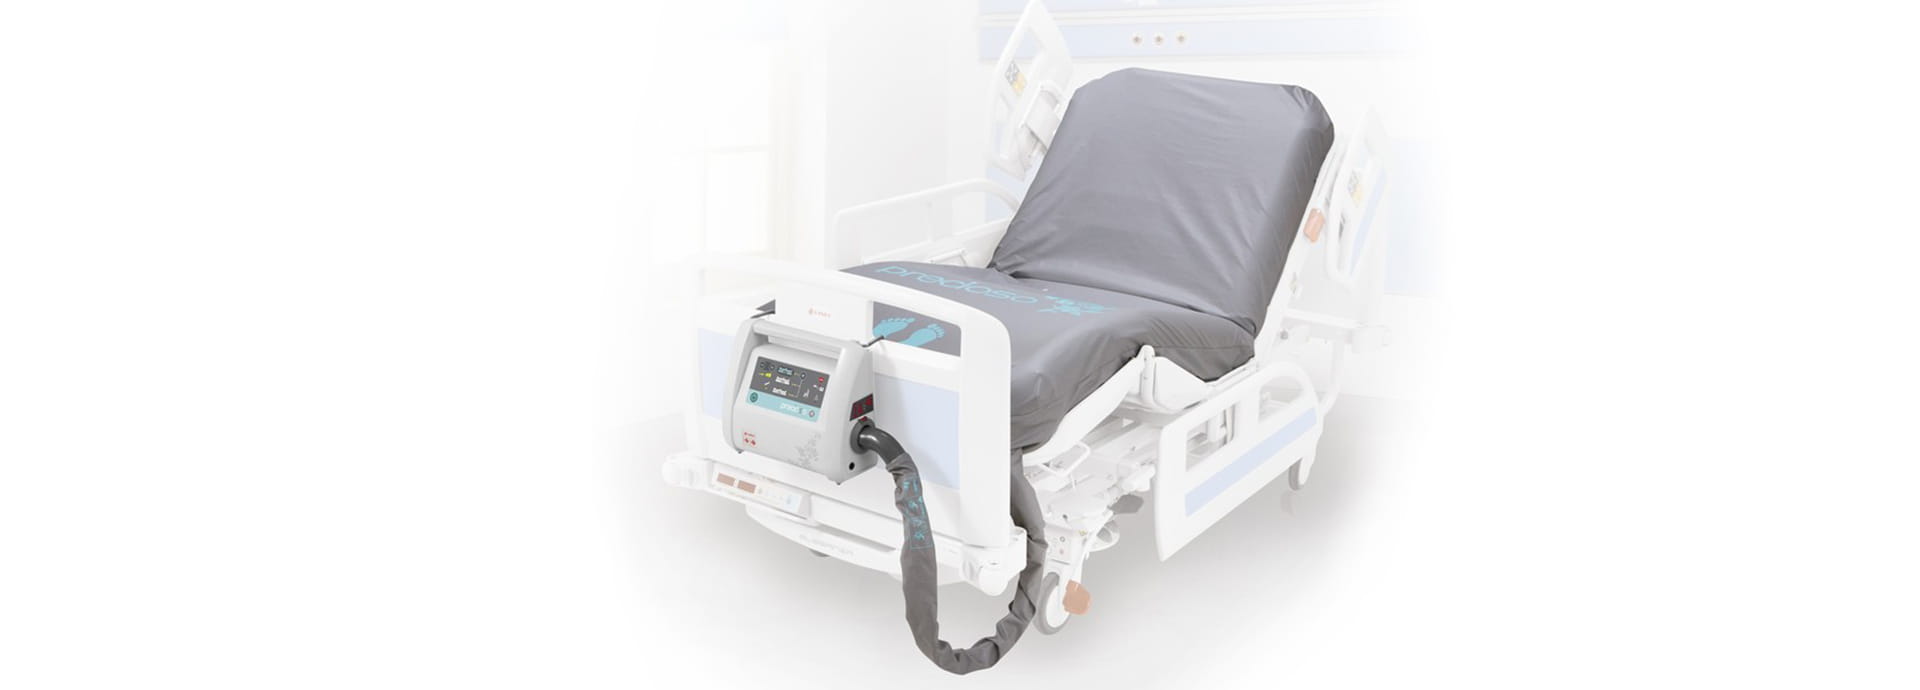 เตียงผู้ป่วยควบคุมด้วยไฟฟ้า Precioso  LINET